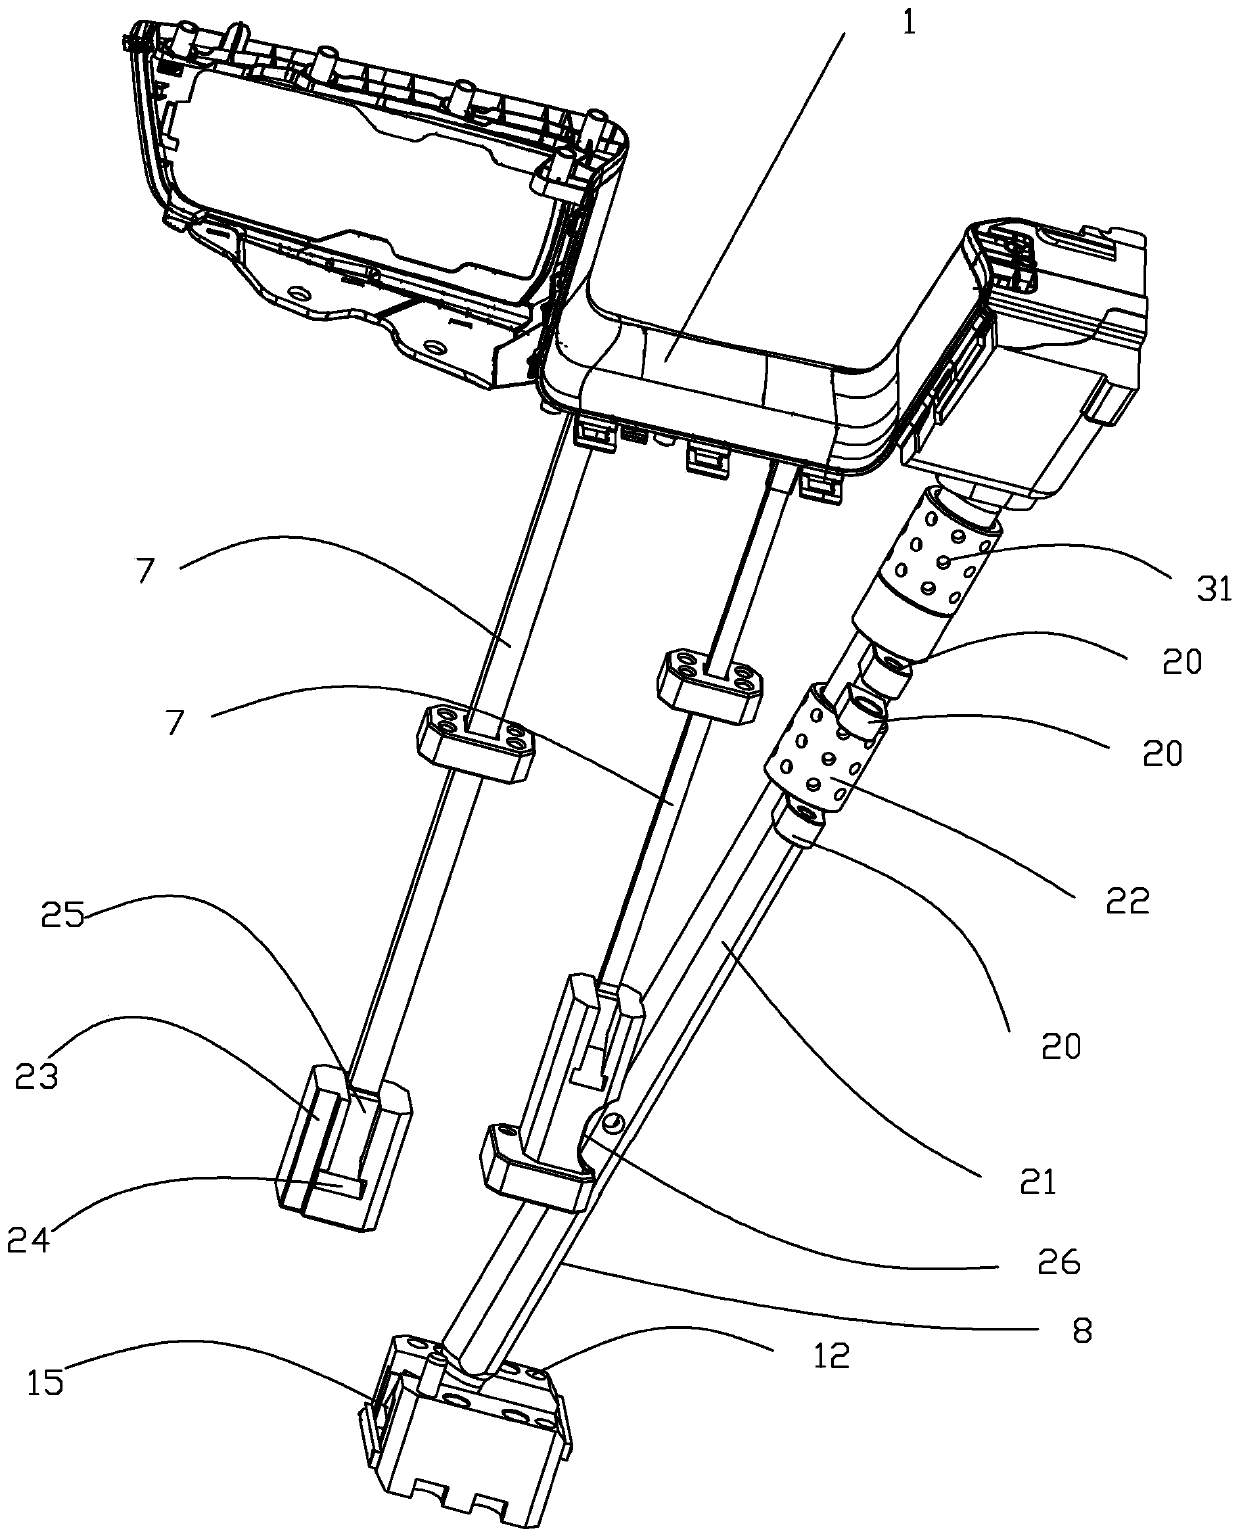 Automobile front door handle ejecting mechanism